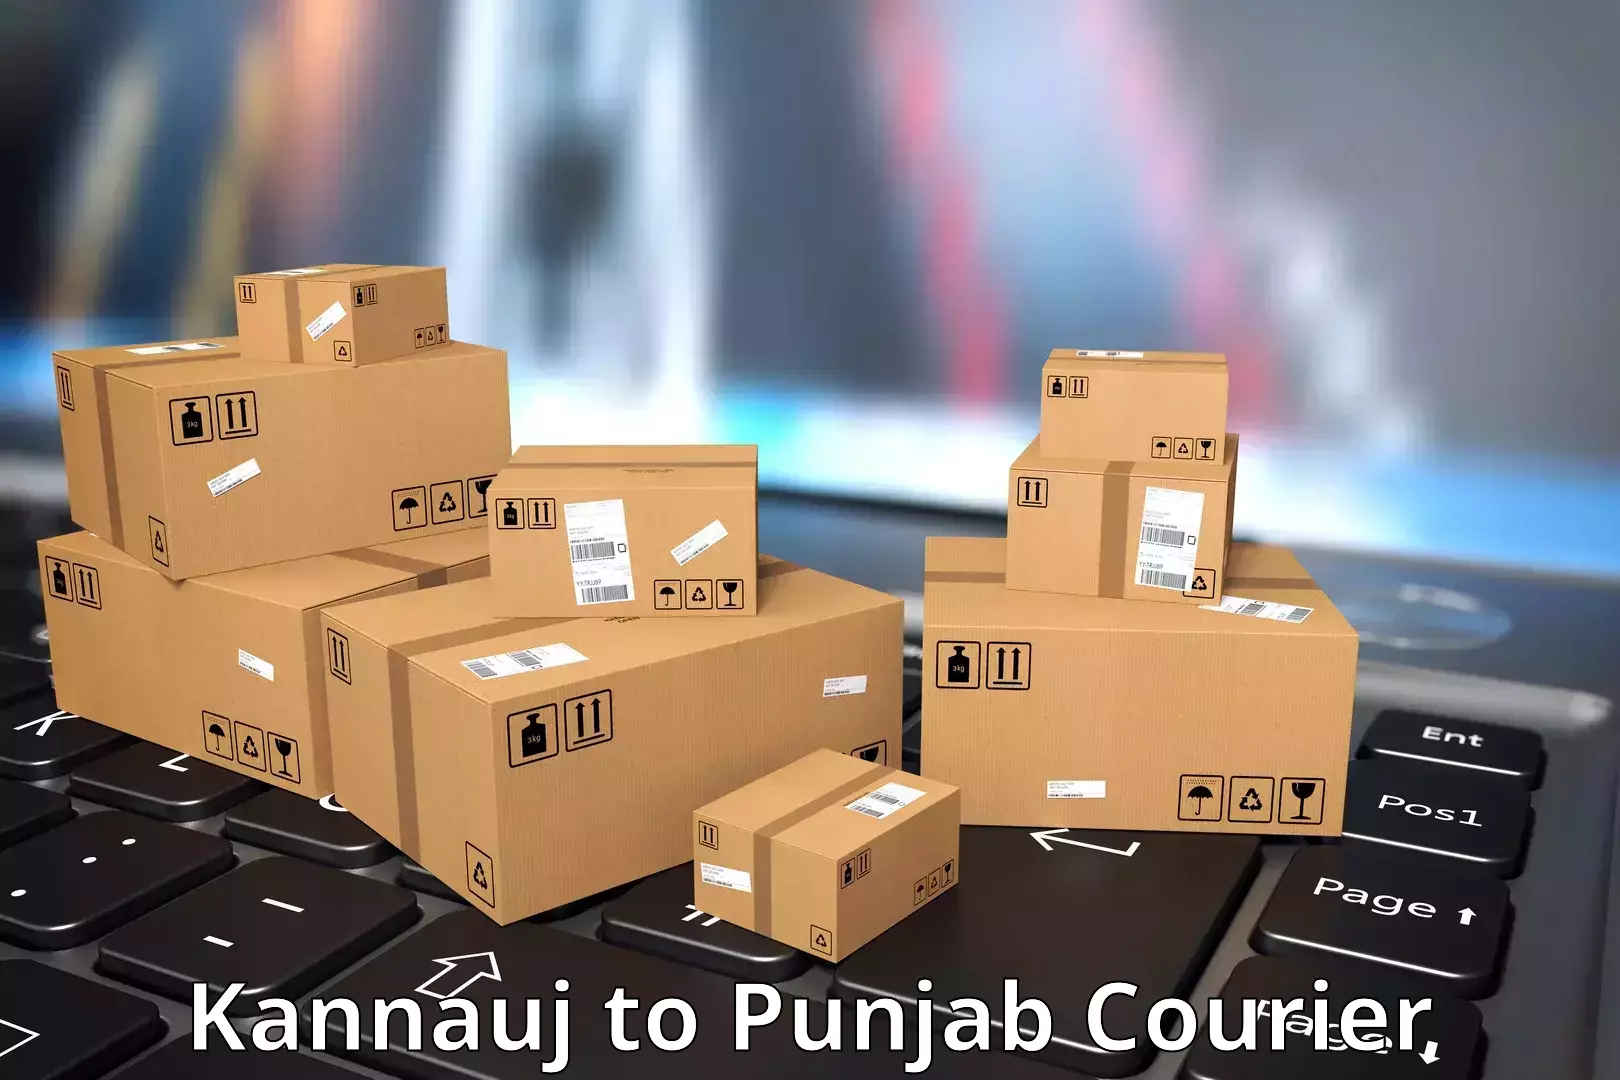 Quality courier partnerships Kannauj to Jhunir